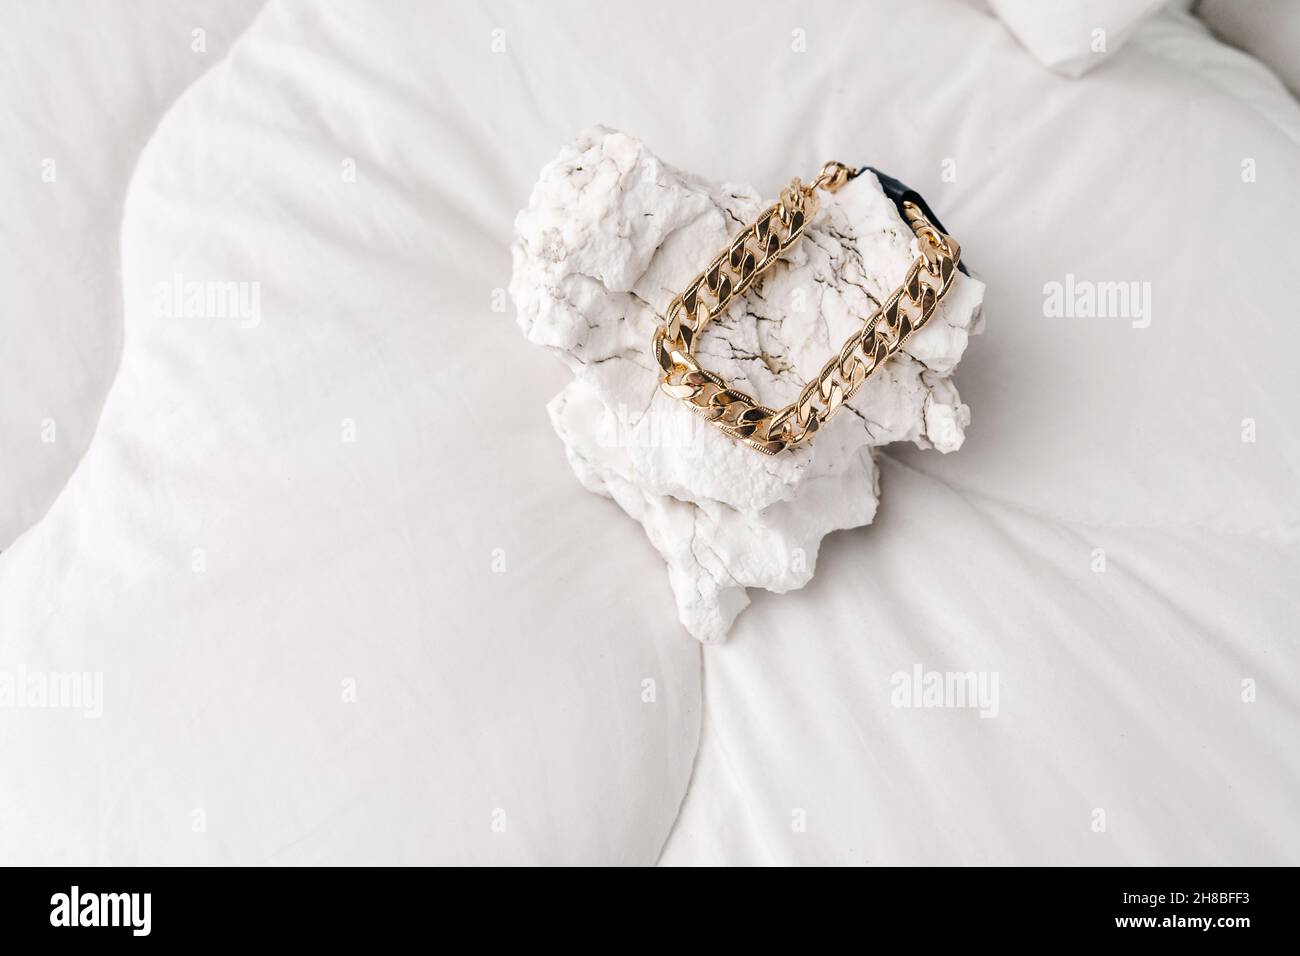 Bijoux fantaisie, bracelet en chaîne de bijouterie dorée sur fond blanc.Pierre blanche comme podium. Banque D'Images